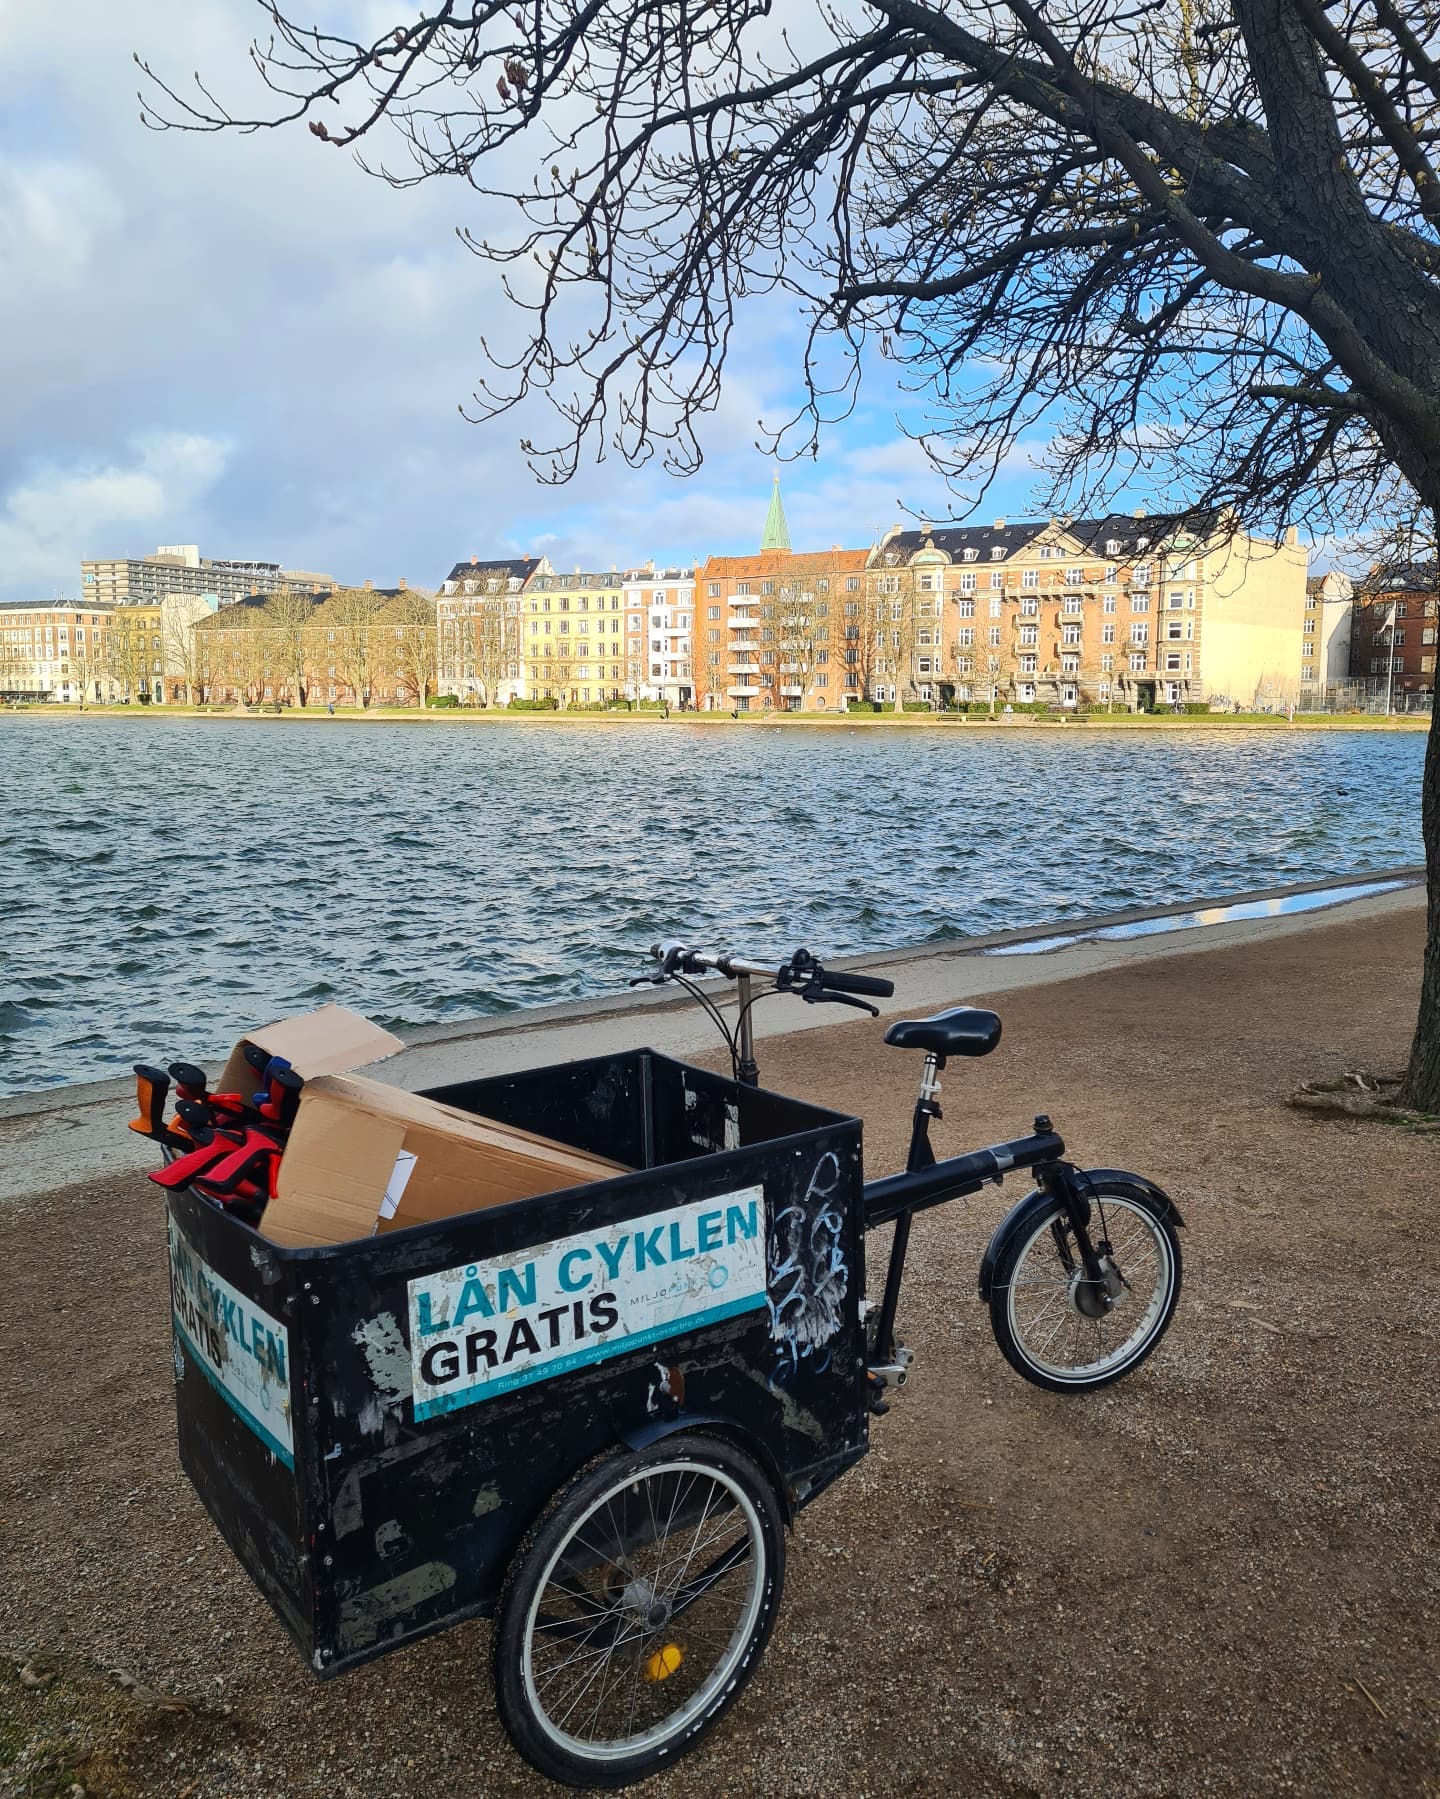 🌳🚲 LÅN EN LADCYKEL 🚲🌳⁠
⁠
Vidste du, at du kan låne en ladcykel af Miljøpunkt Østerbro? - ganske gratis! ⁠
⁠
Cyklerne udlånes for en uge af gangen, fra mandag til søndag. Så skal du flytte, købe stort ind eller måske bare på cykeltur i byen, så send en mail til cykel@miljopunkt-osterbro.dk 📧 ⁠
⁠
Skriv tid og dato for, hvornår du ønsker at låne en cykel, samt navn og telefonnummer. Hvis der er en cykel ledig, vil du få en bekræftelse og mere info om selve lånet. ⁠
⁠
Inde på vores hjemmeside kan du også se hvornår cyklerne er ledige i vores kalender. ⁠
⁠
Se link i bio 🔗⁠

Udlånet af ladcykler er støttet af Østerbro Lokaludvalg @vi_er_oesterbro 💚
⁠
#miljøpunktøsterbro #miljøpunkt #østerbro #nordhavn #grøntøsterbroognordhavn #grøntøsterbro #bæredygtigøsterbro #grøntnordhavn #bæredygtigtnordhavn #bæredygtig #bæredygtigt #bæredygtighverdag #bæredygtiglivsstil #grønhverdag #hverdagsaktivisme #miljøvenlig #klimavenlig #ladcykel #cargobike #sortejernhest #ironhorse #blackironhorse #copenhagen #københavn #cykelby #deleordning #skalvidele #deleøkonomi #delecykler #grønmobilitet⁠